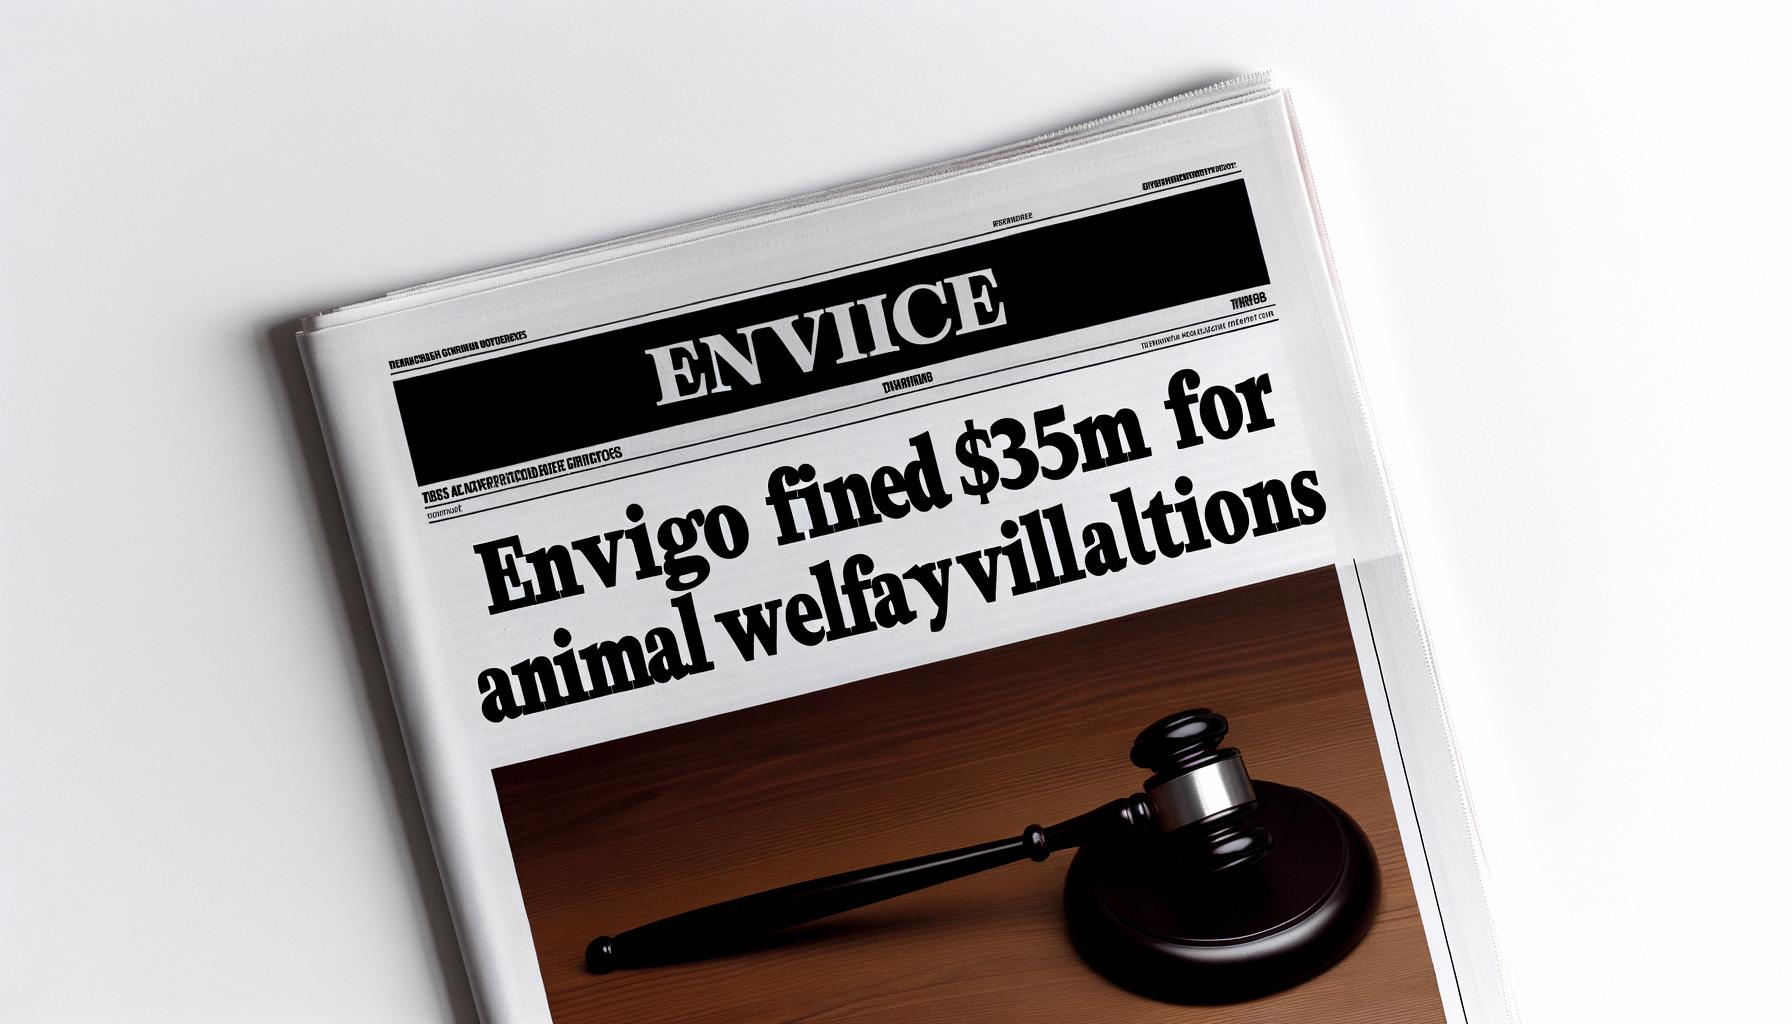 Envigo fined $35M for animal welfare violations